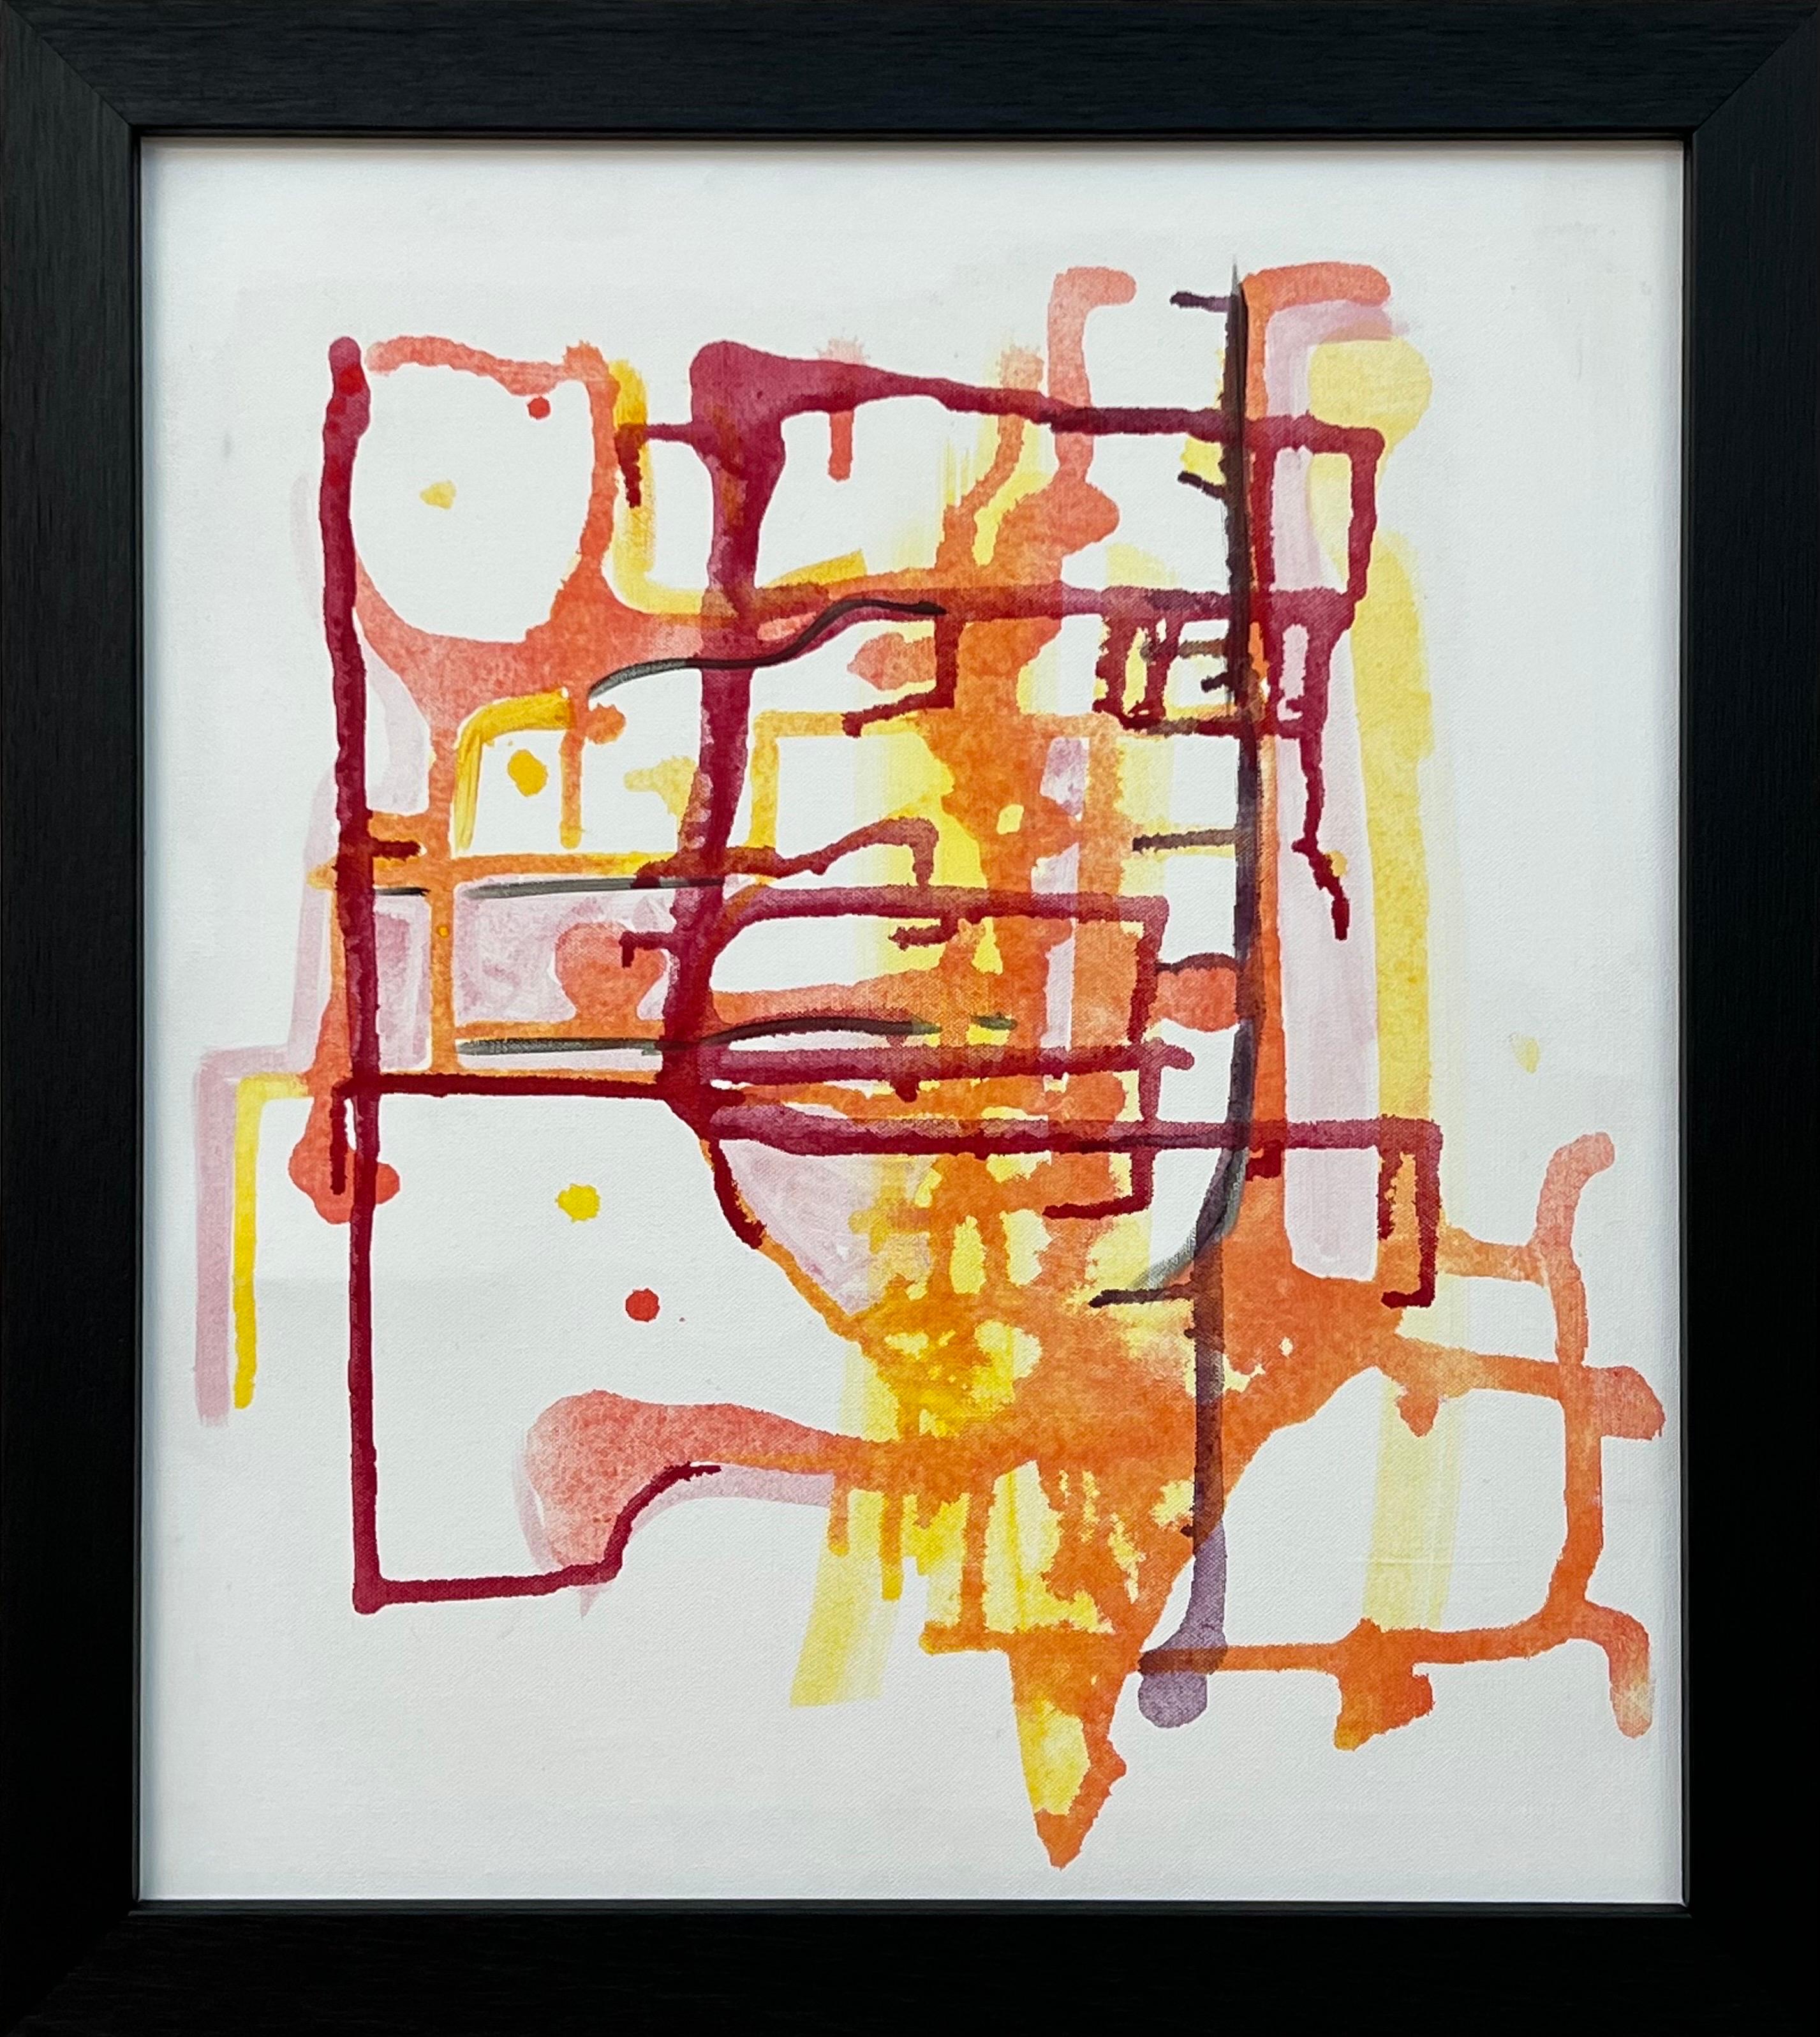 Une rare œuvre d'art abstraite expérimentale de début de carrière utilisant du rouge, du jaune et de l'orange sur un fond blanc, réalisée par une artiste britannique contemporaine de premier plan, Angela Wakefield. 

L'œuvre d'art mesure 20 x 18